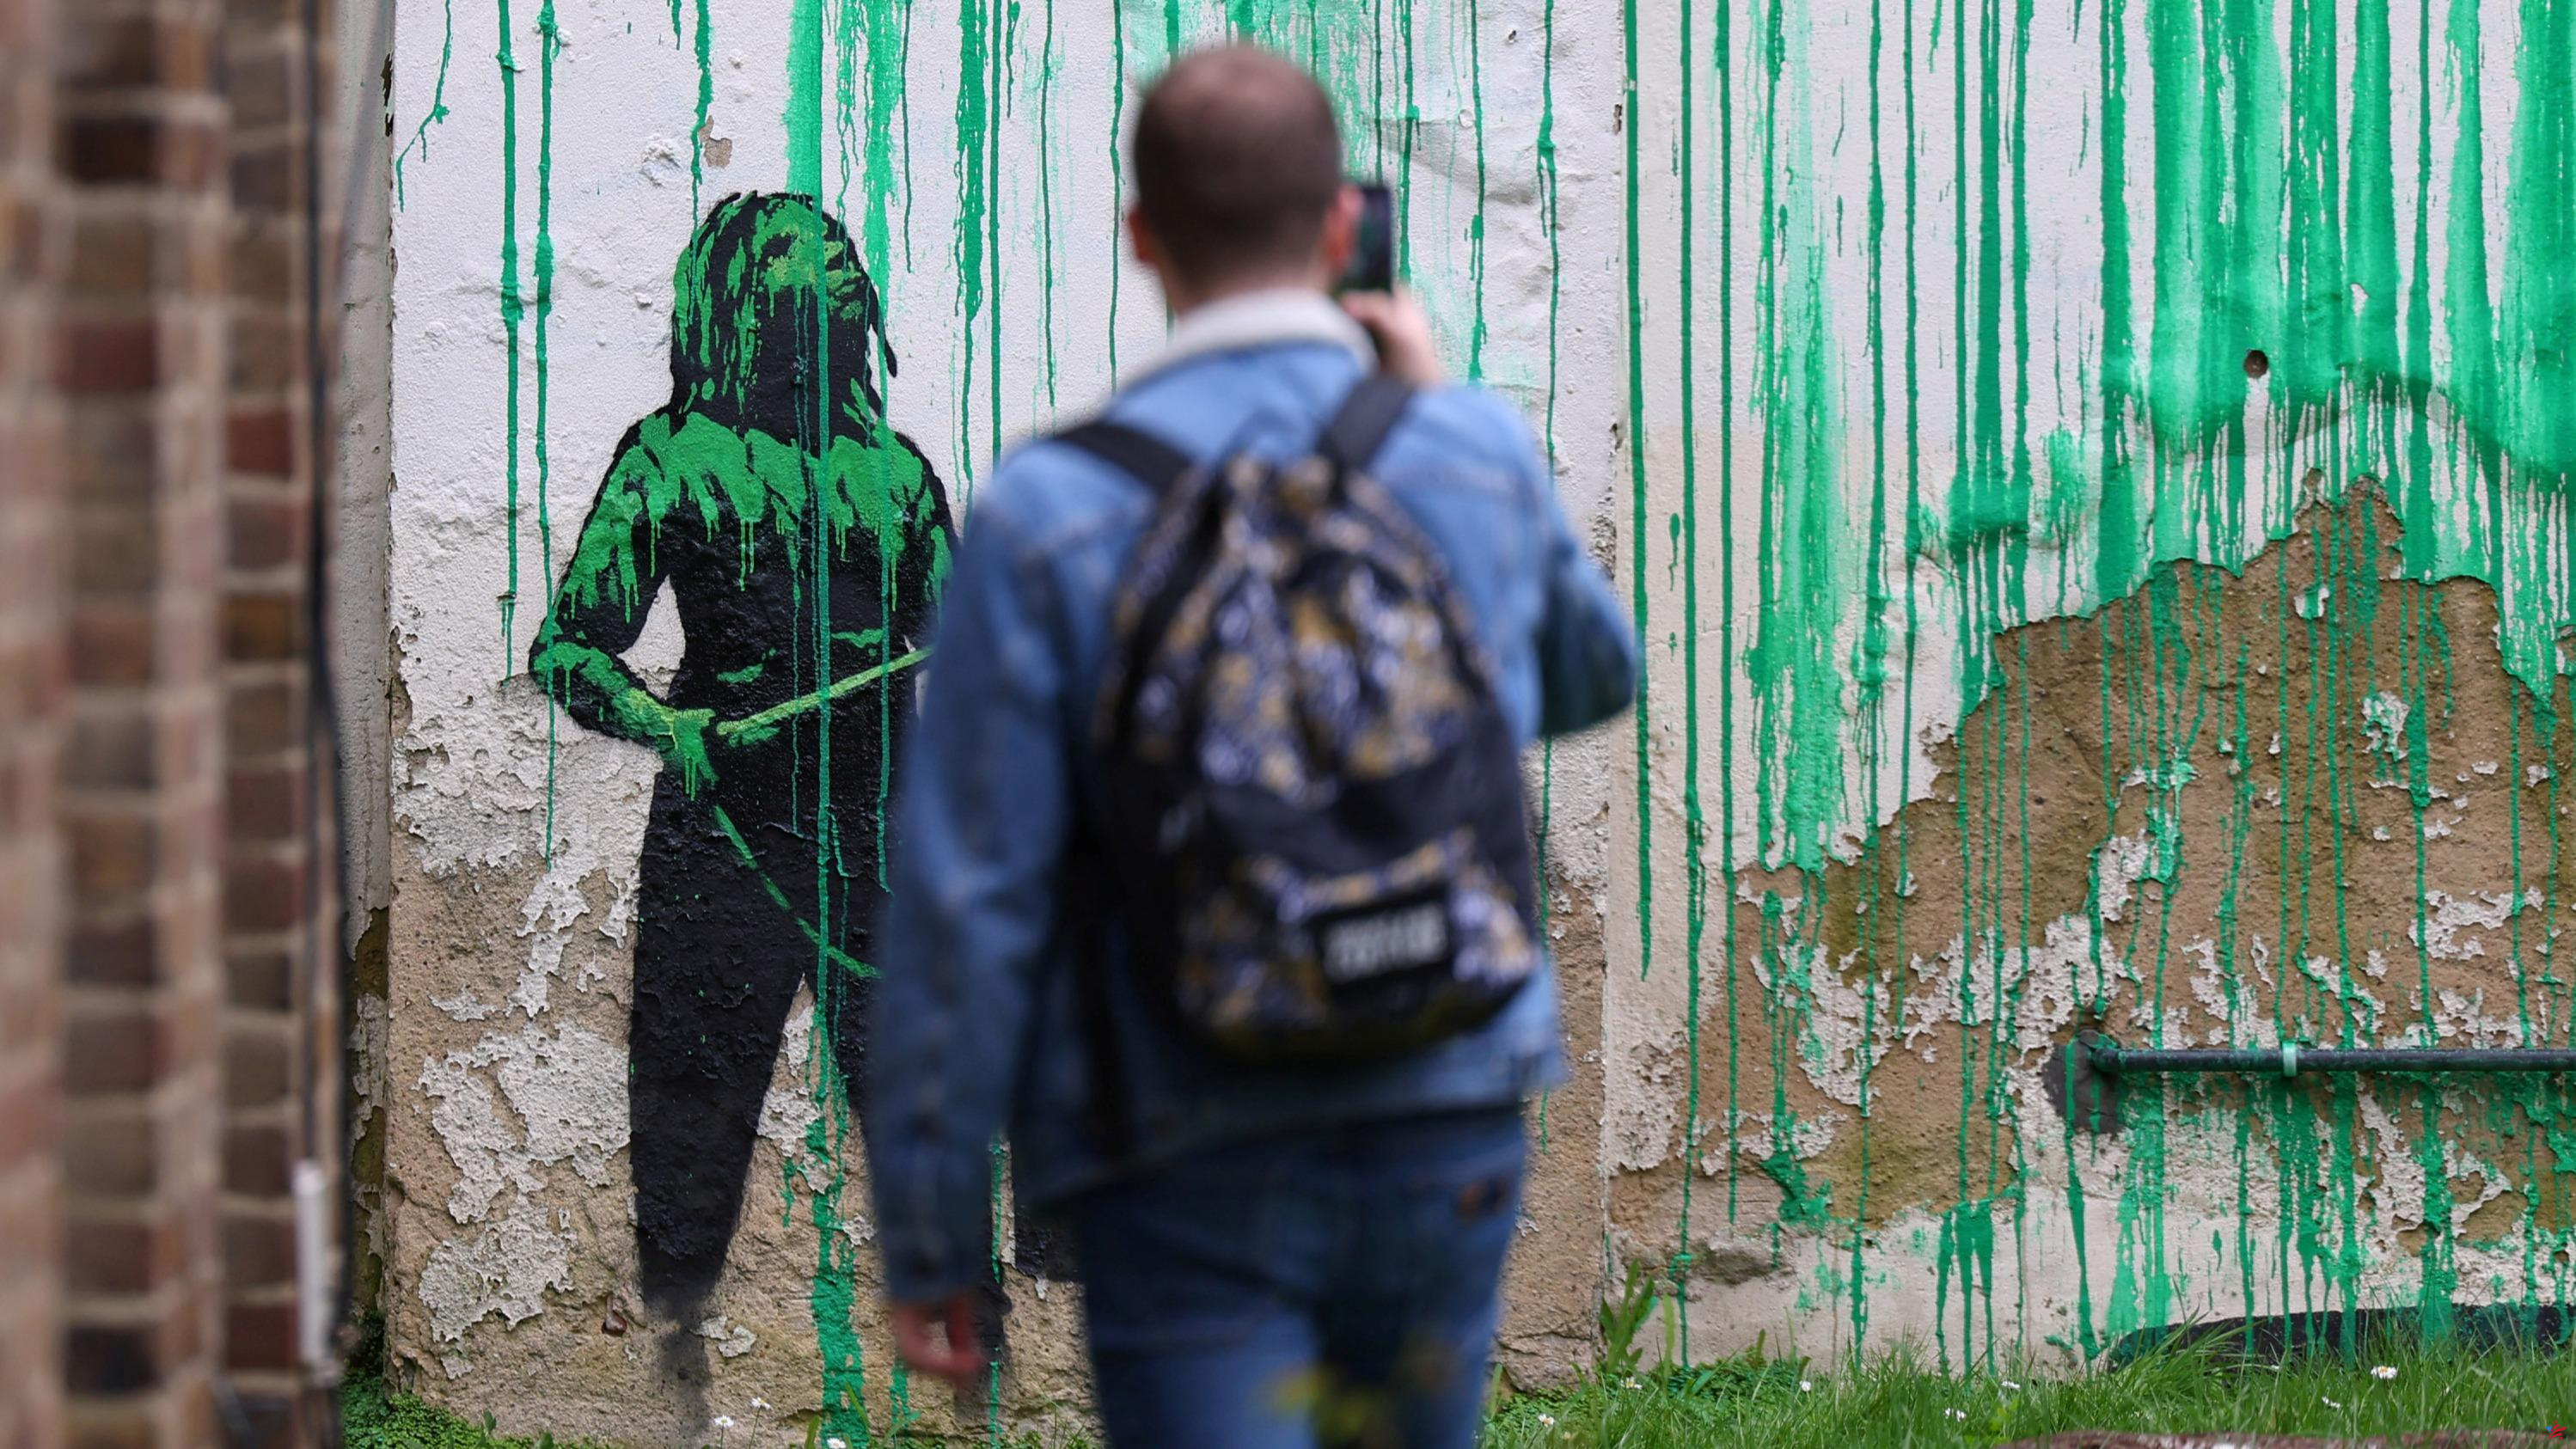 El último fresco de Banksy en Londres manchado con pintura blanca